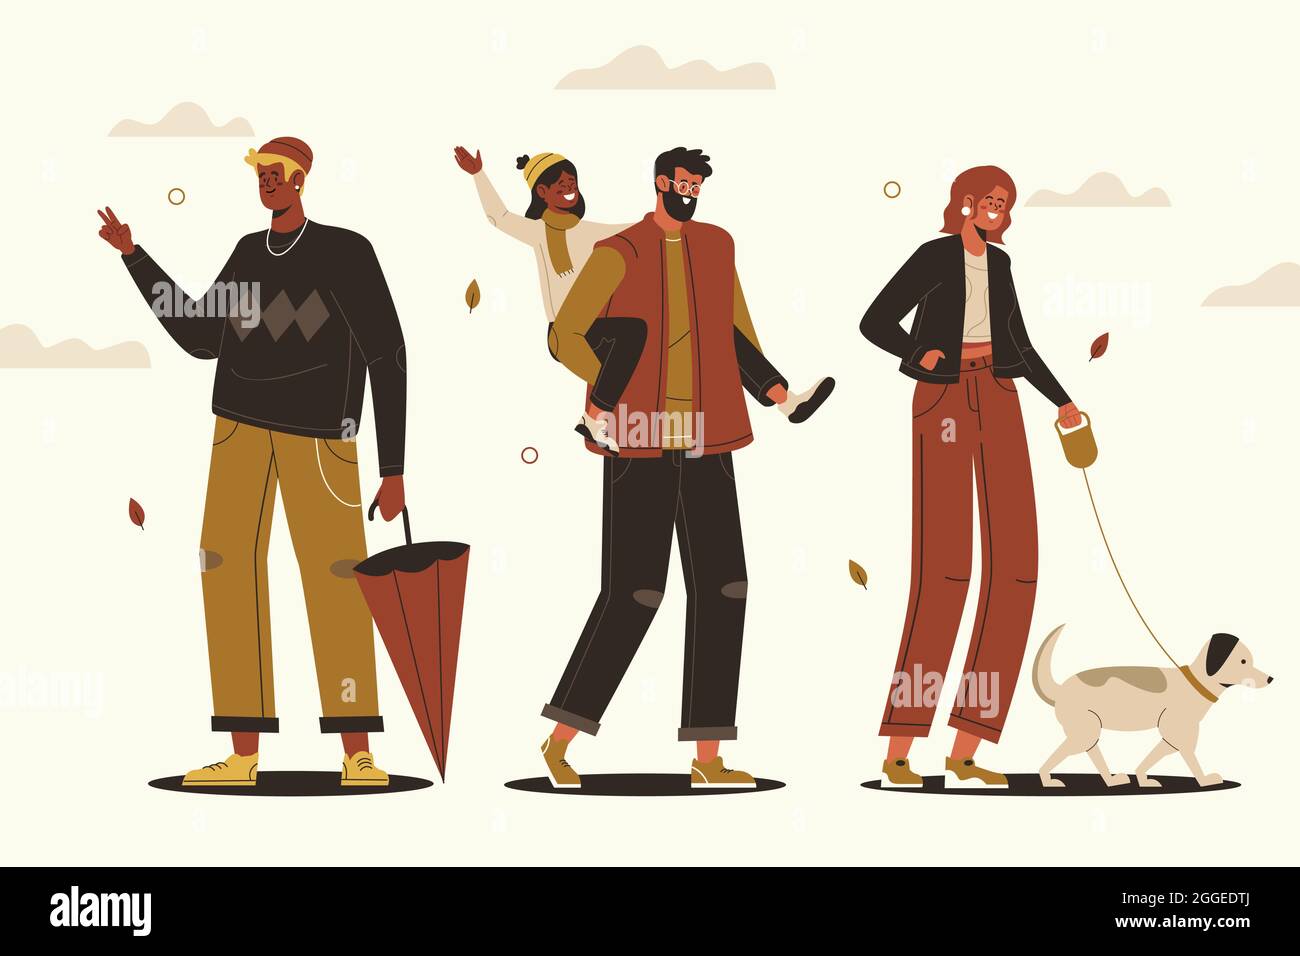 Handgezeichnete flache Illustration von Menschen im Herbst Vektor-Illustration. Stock Vektor